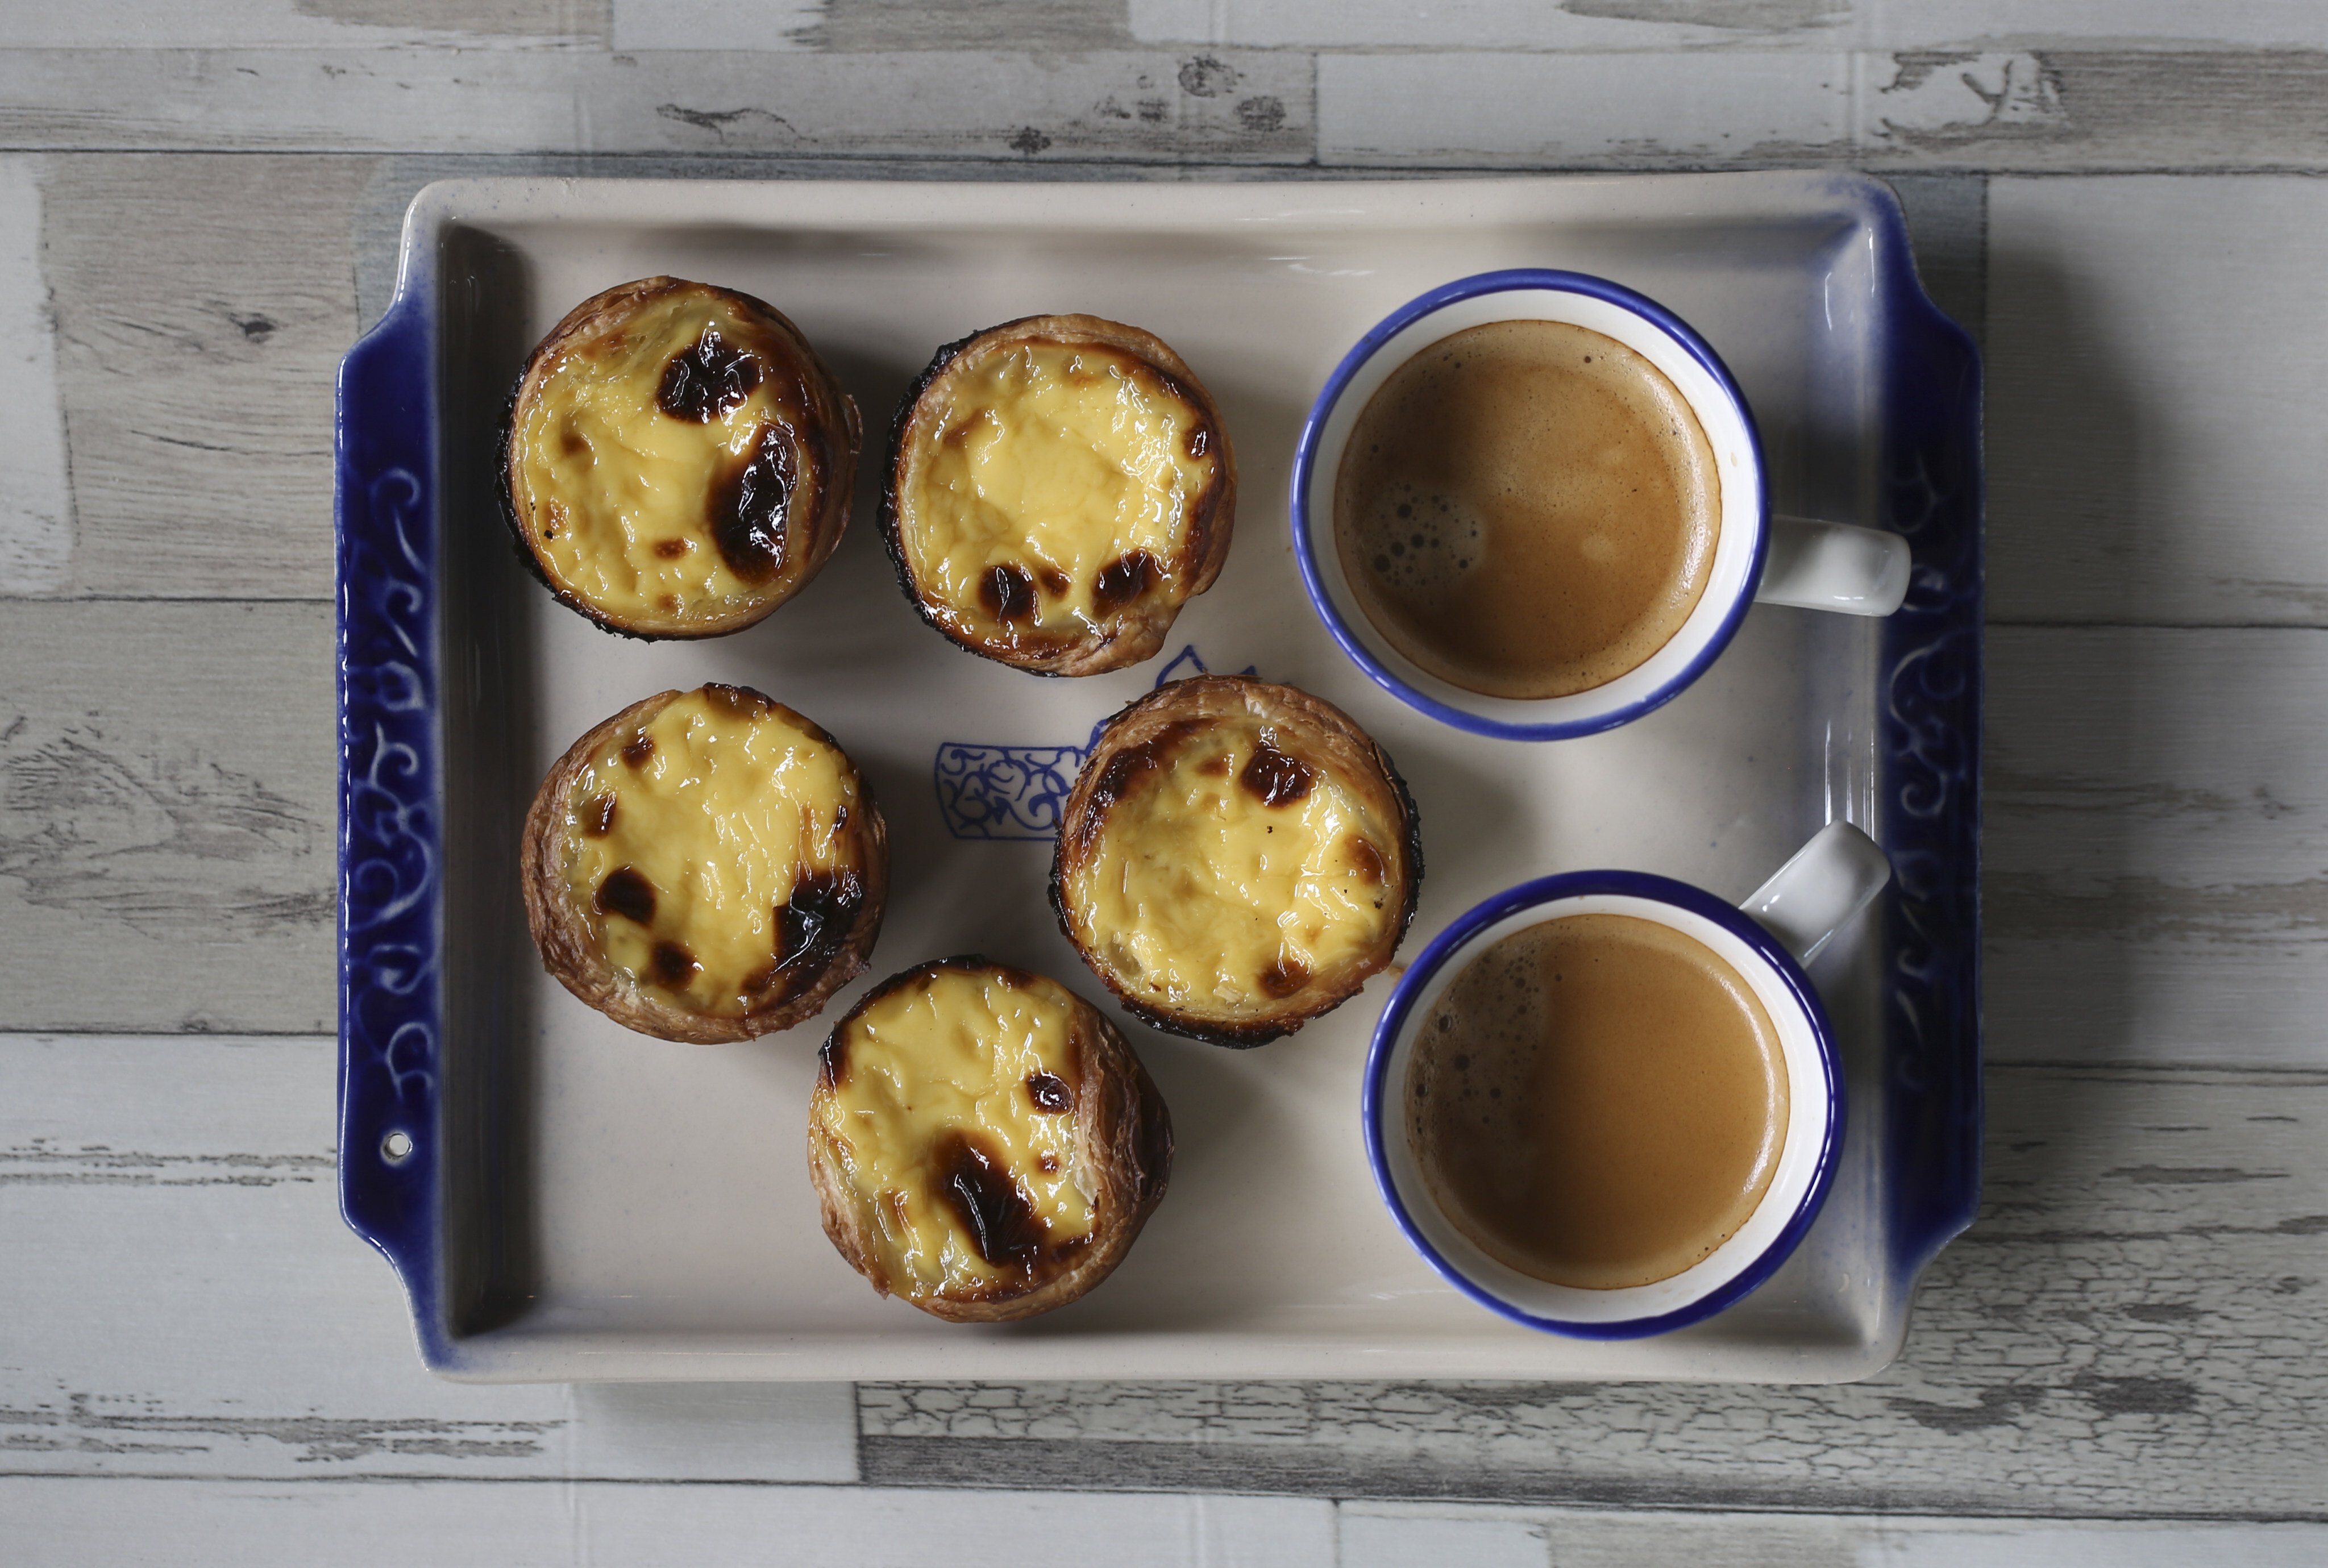 Macanese-style Portuguese egg tarts. Photo: Jonathan Wong